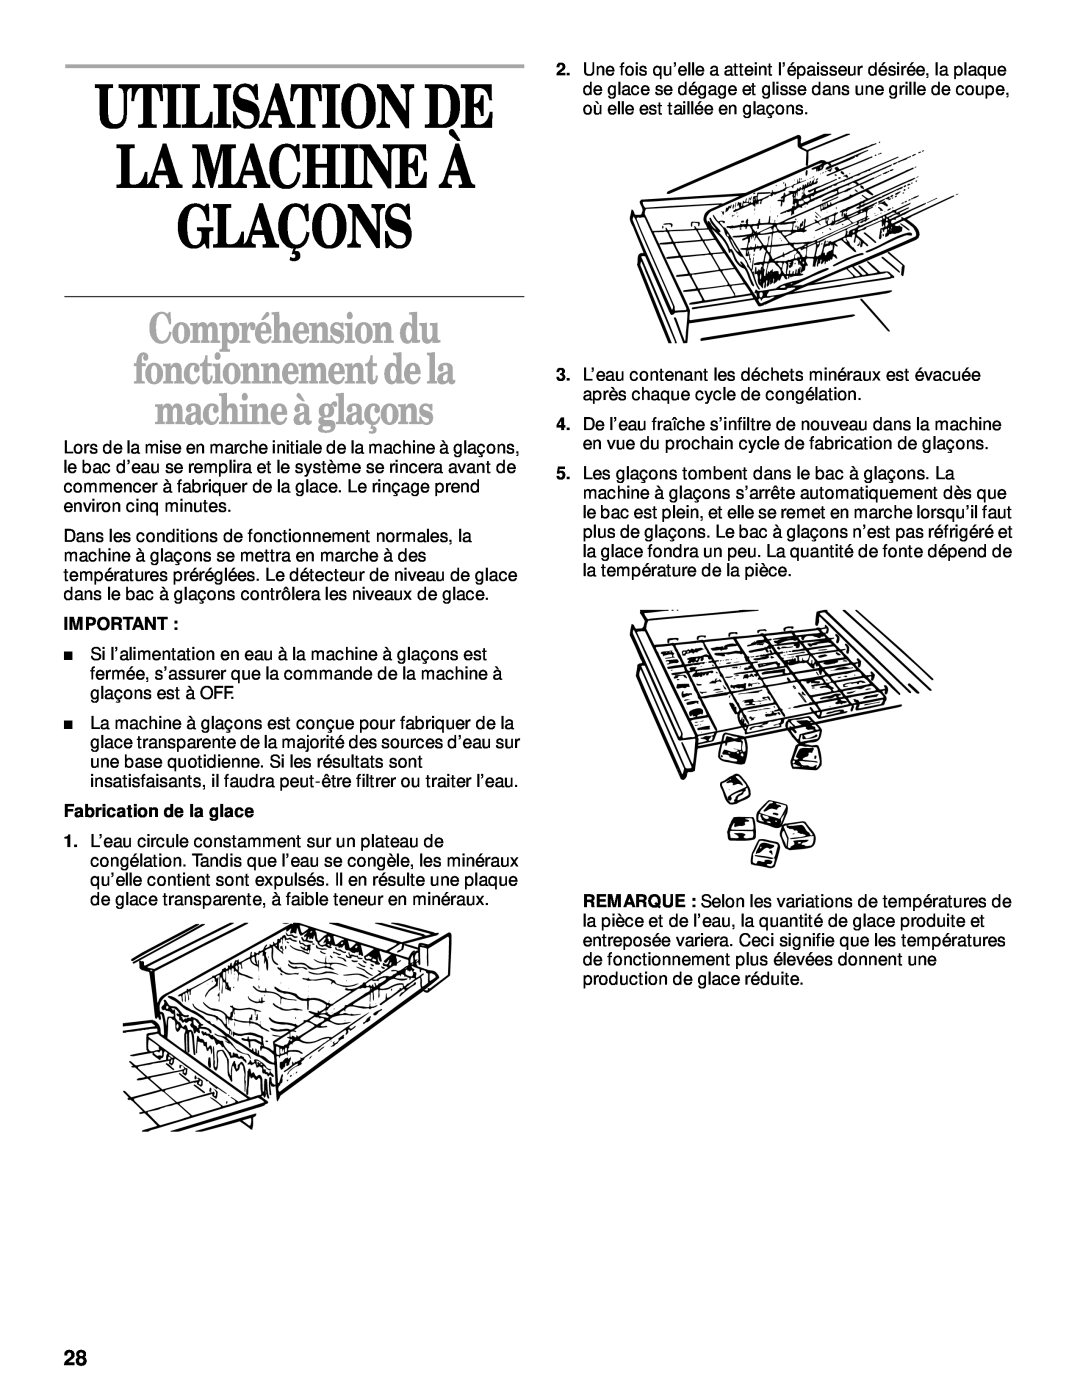 Whirlpool 2208357 manual Glaçons, La Machine À, Utilisation De, Compréhensiondu fonctionnement dela machineà glaçons 